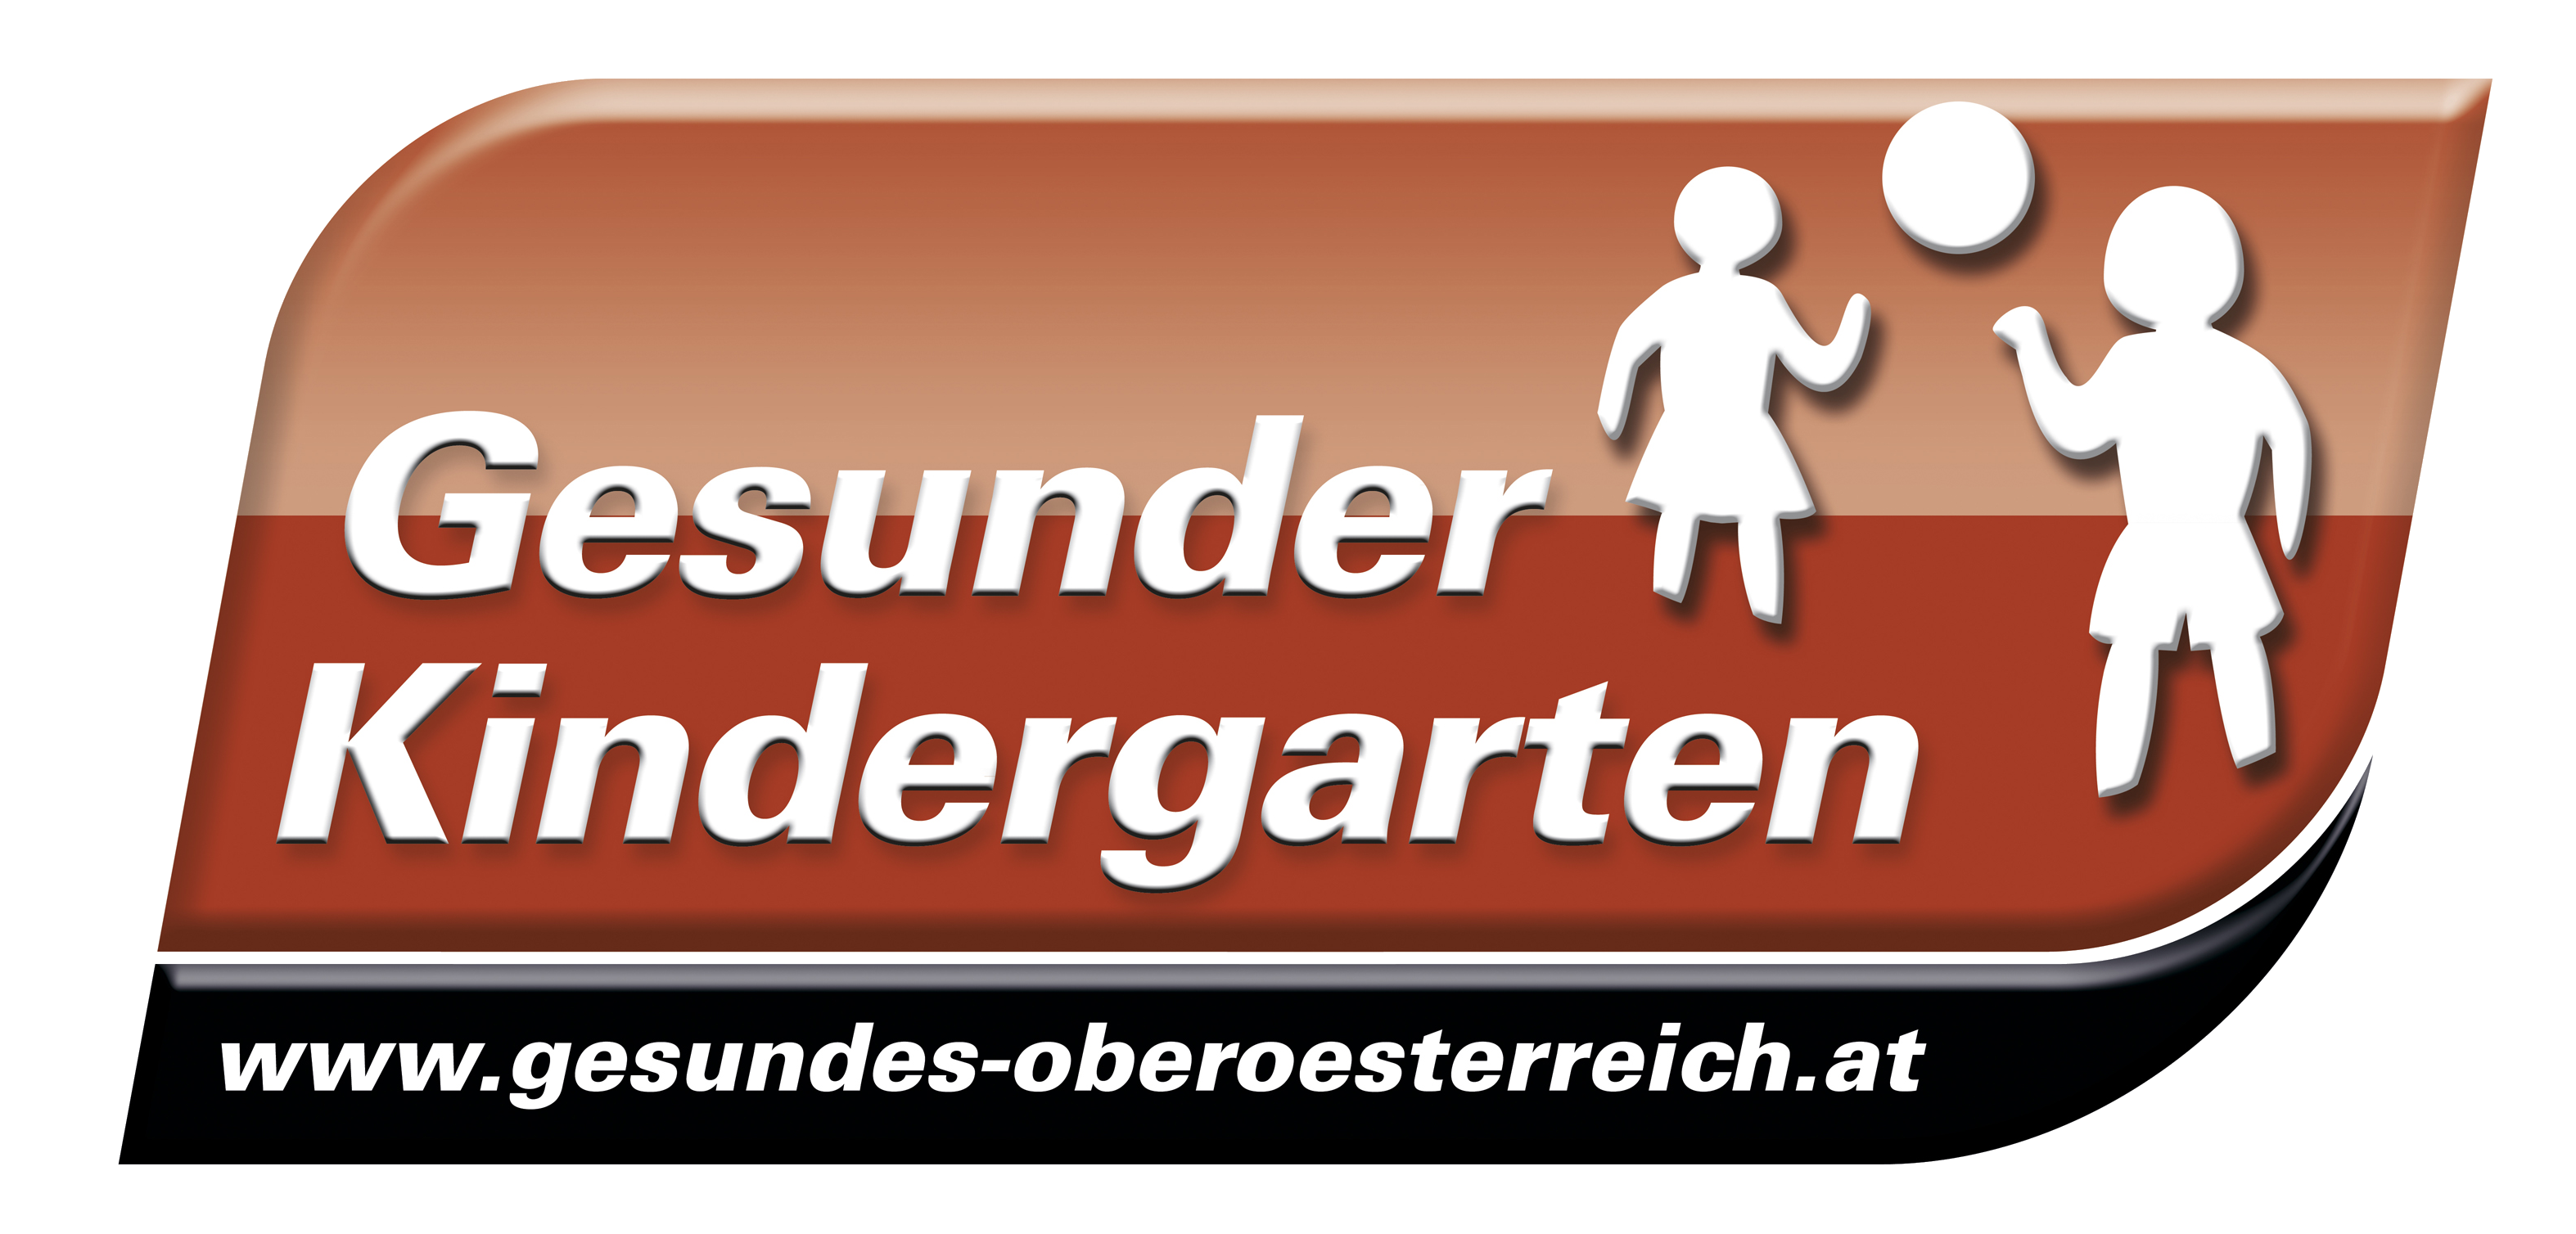 Gesunder Kindergarten responsive